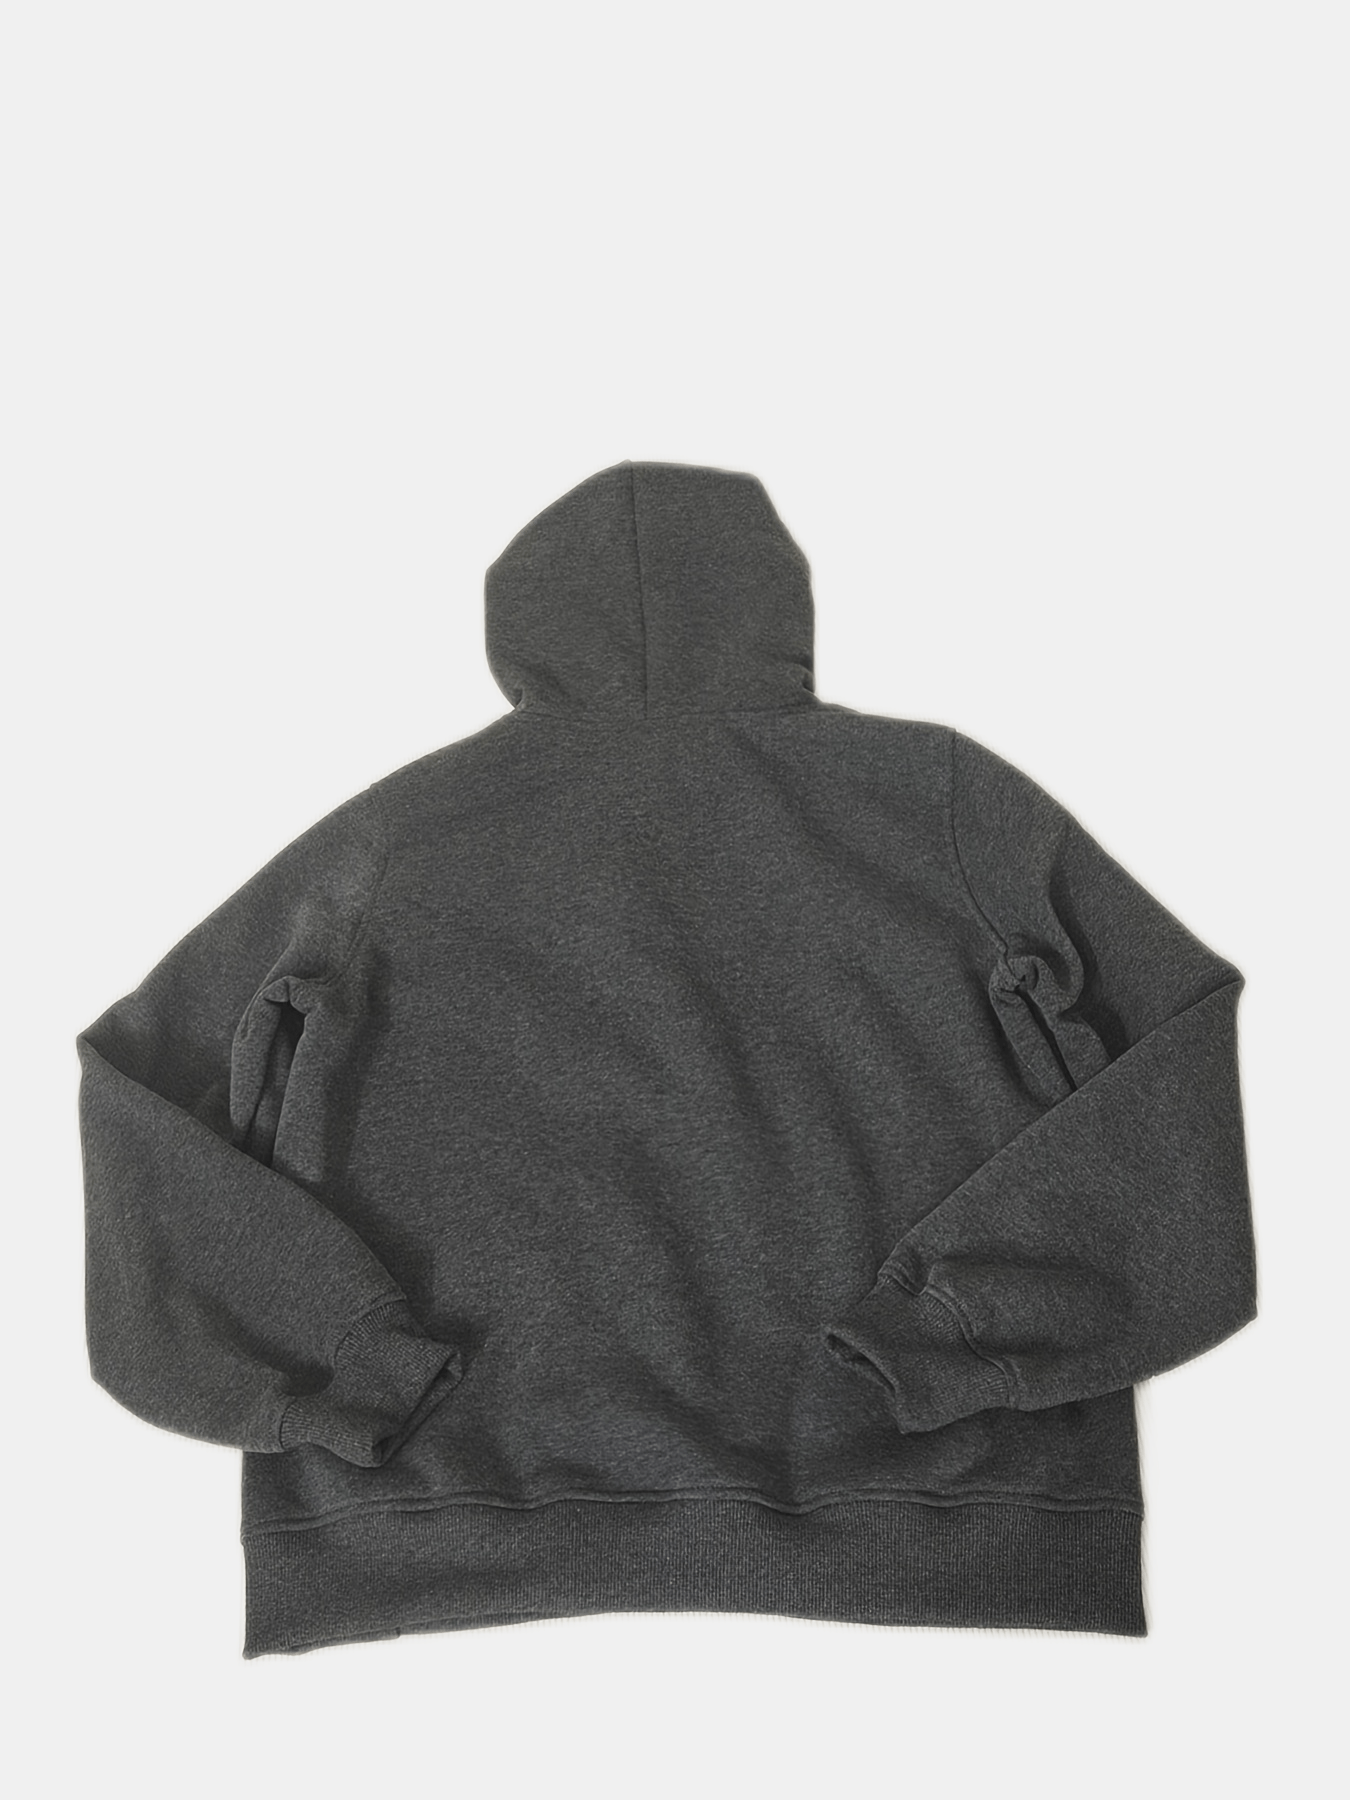 graphic letter print hoodie casual long sleeve kangaroo pocket hoodie sweatshirt womens clothing details 0